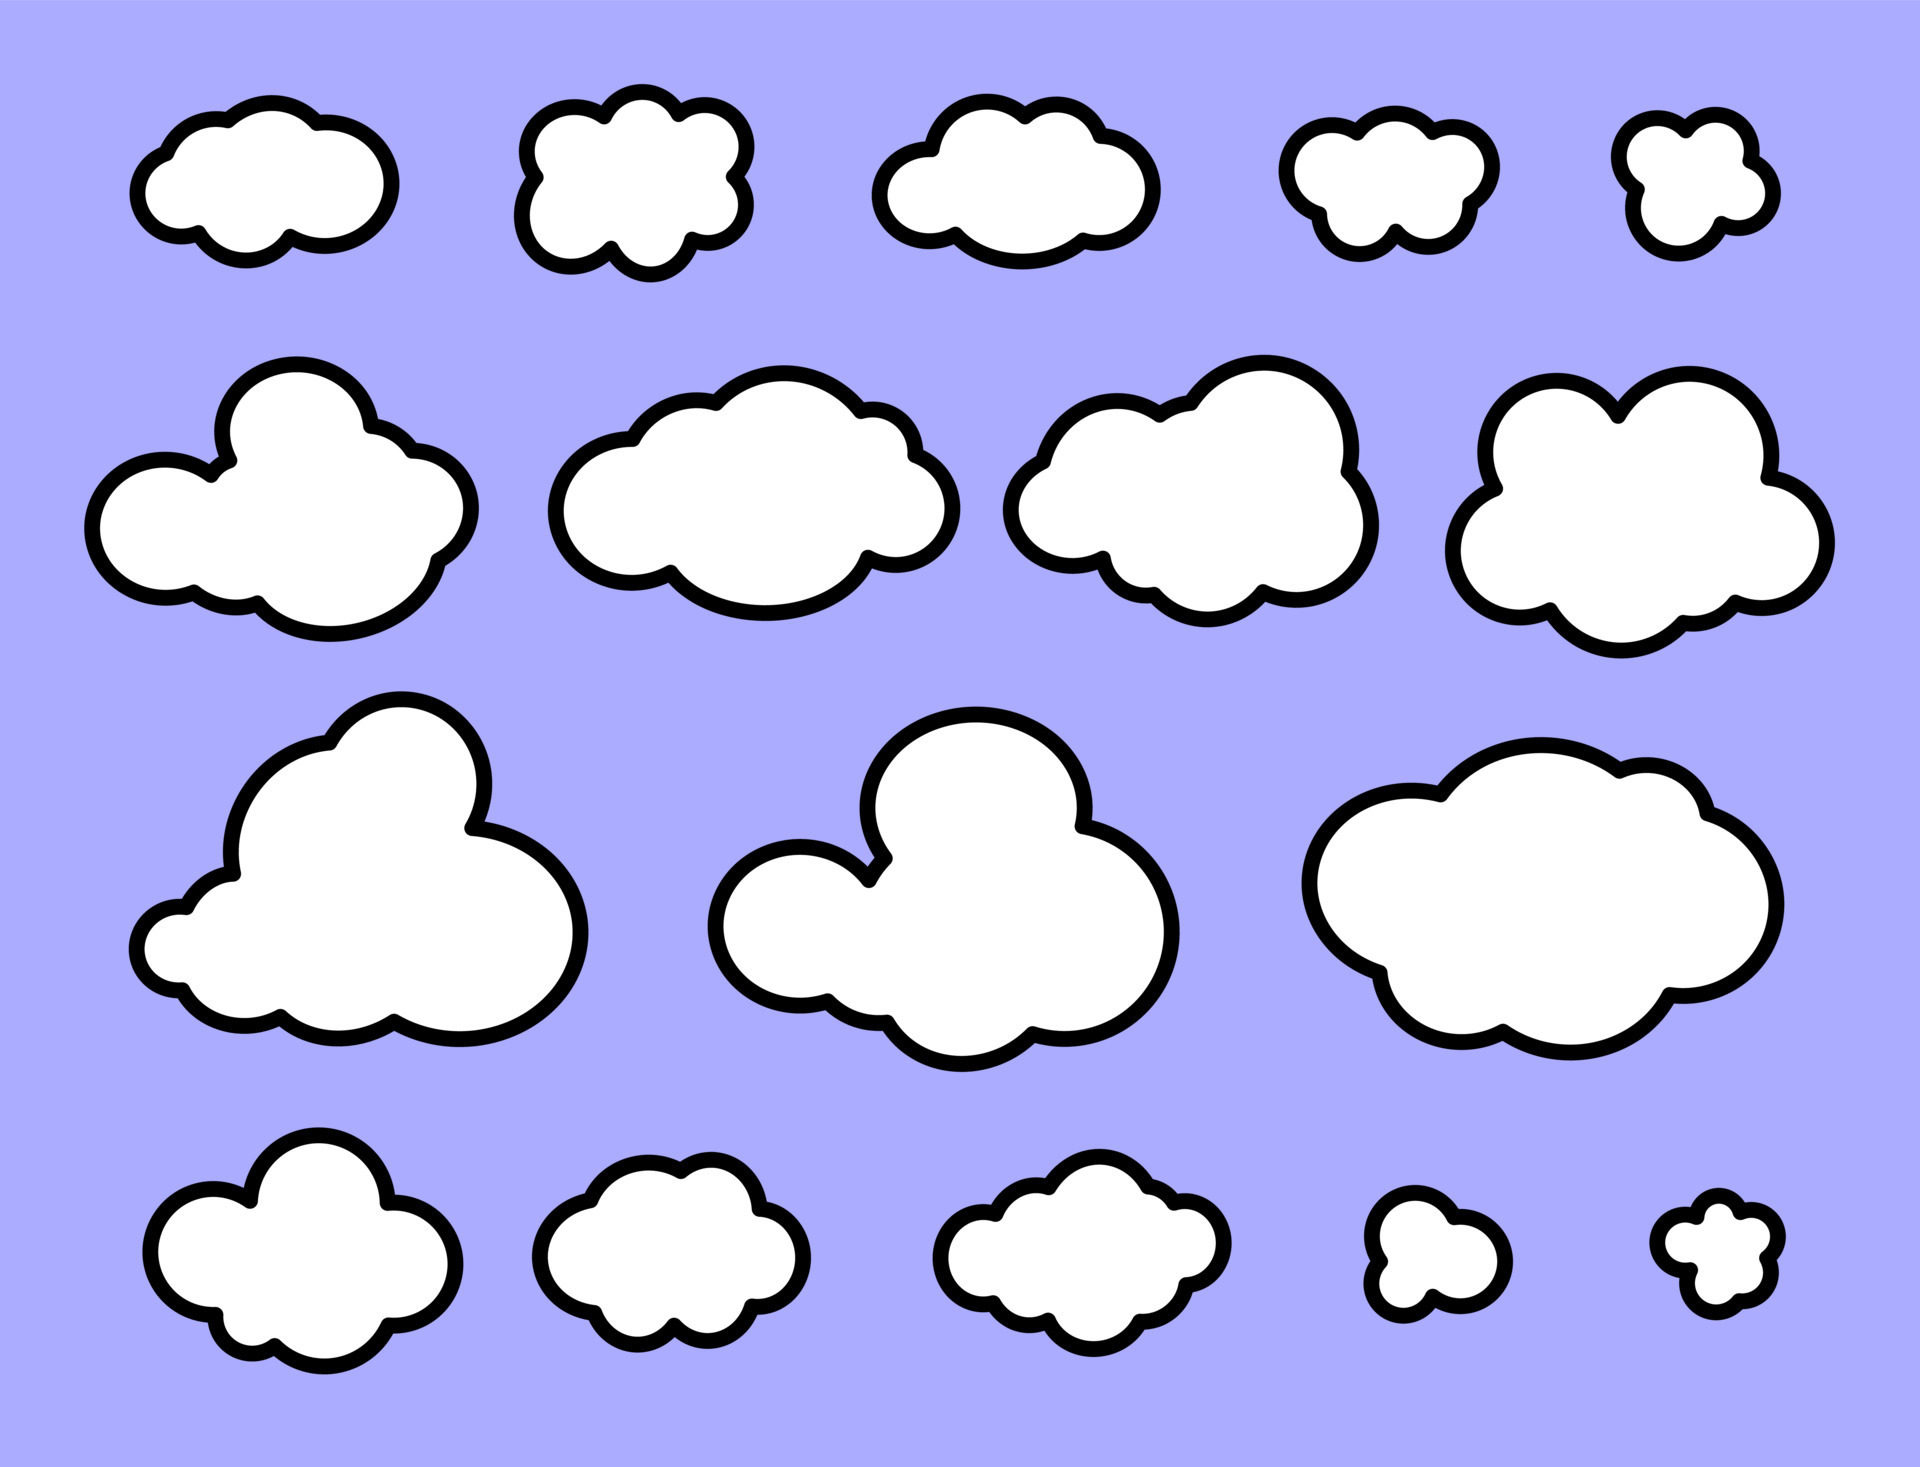 Cùng ngắm nhìn những biểu tượng đám mây trong bức tranh này! Từ những chiếc mây bồng bềnh này, bạn có thể tưởng tượng ra những câu chuyện thần tiên đẹp nhất. Hãy đắm mình trong thế giới mộng mơ của những biểu tượng đám mây này nhé!